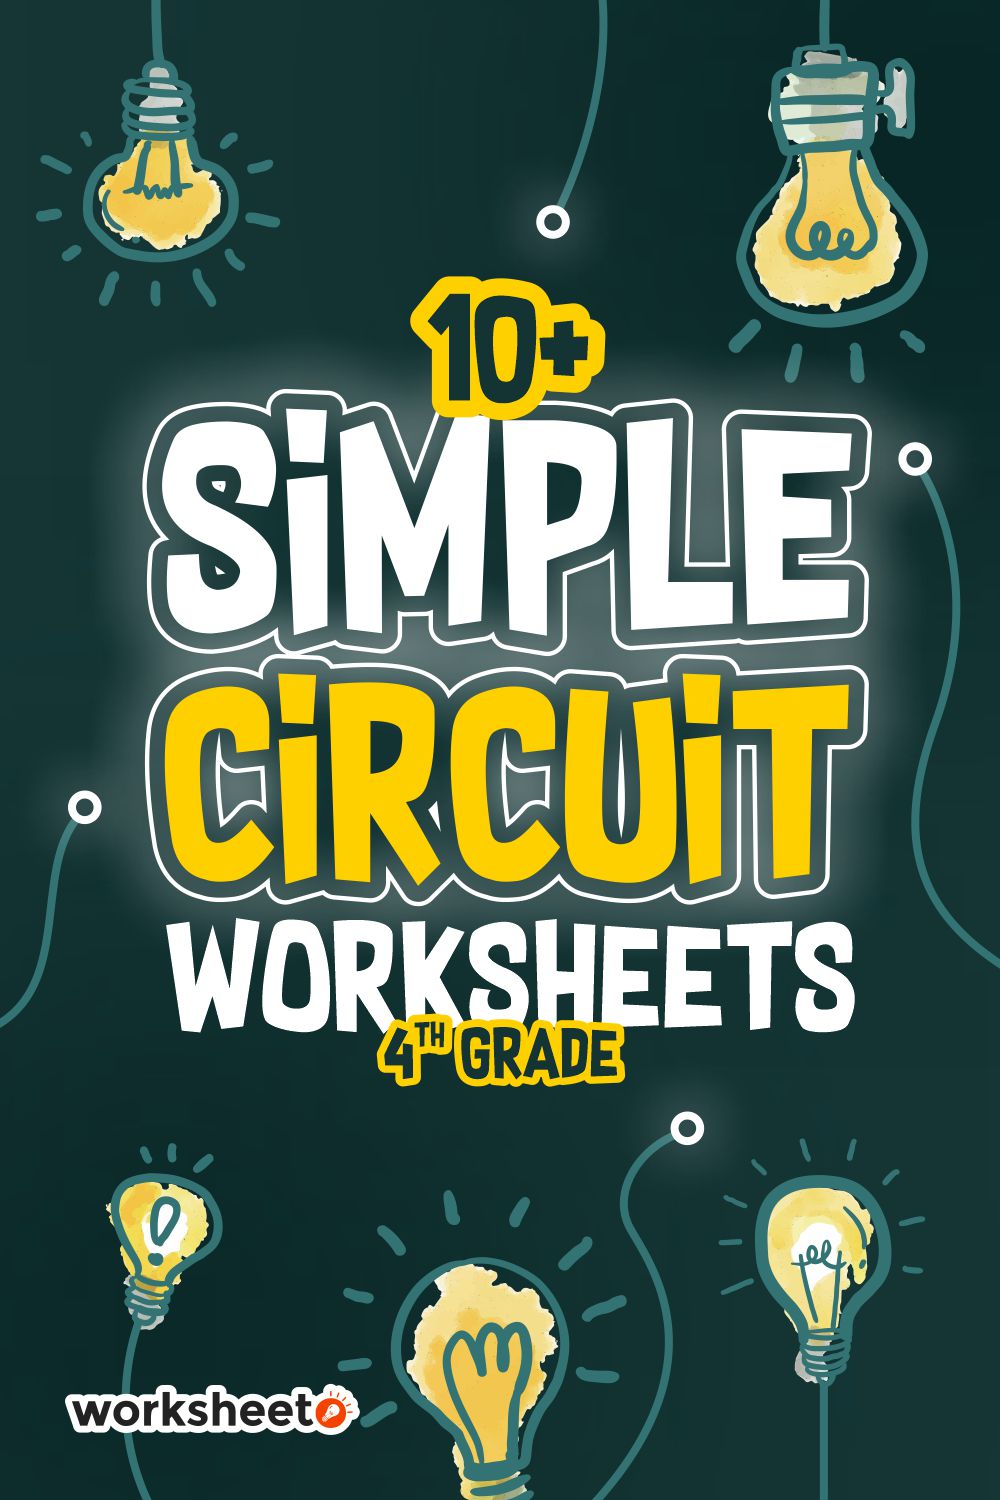 Simple Circuit Worksheets 4th Grade